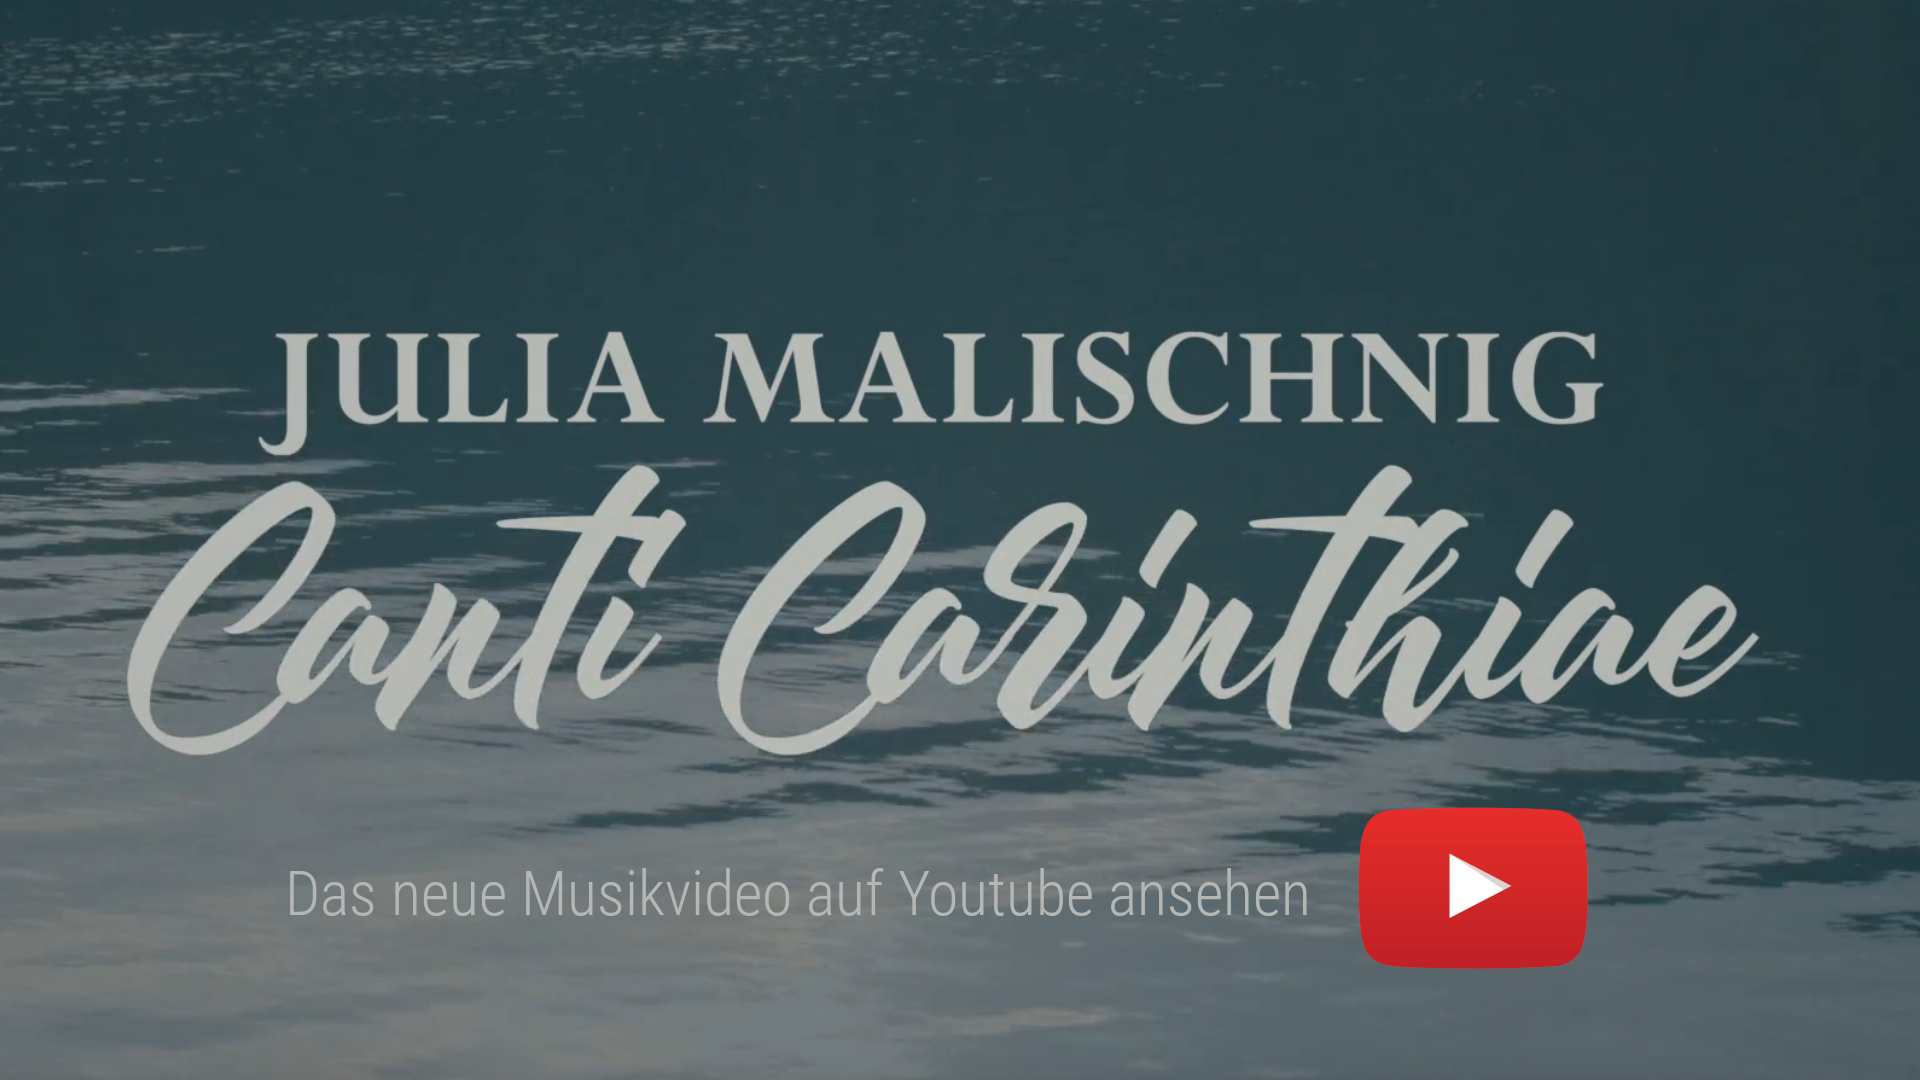 Das neue Musikvideo von Julia Malischnig